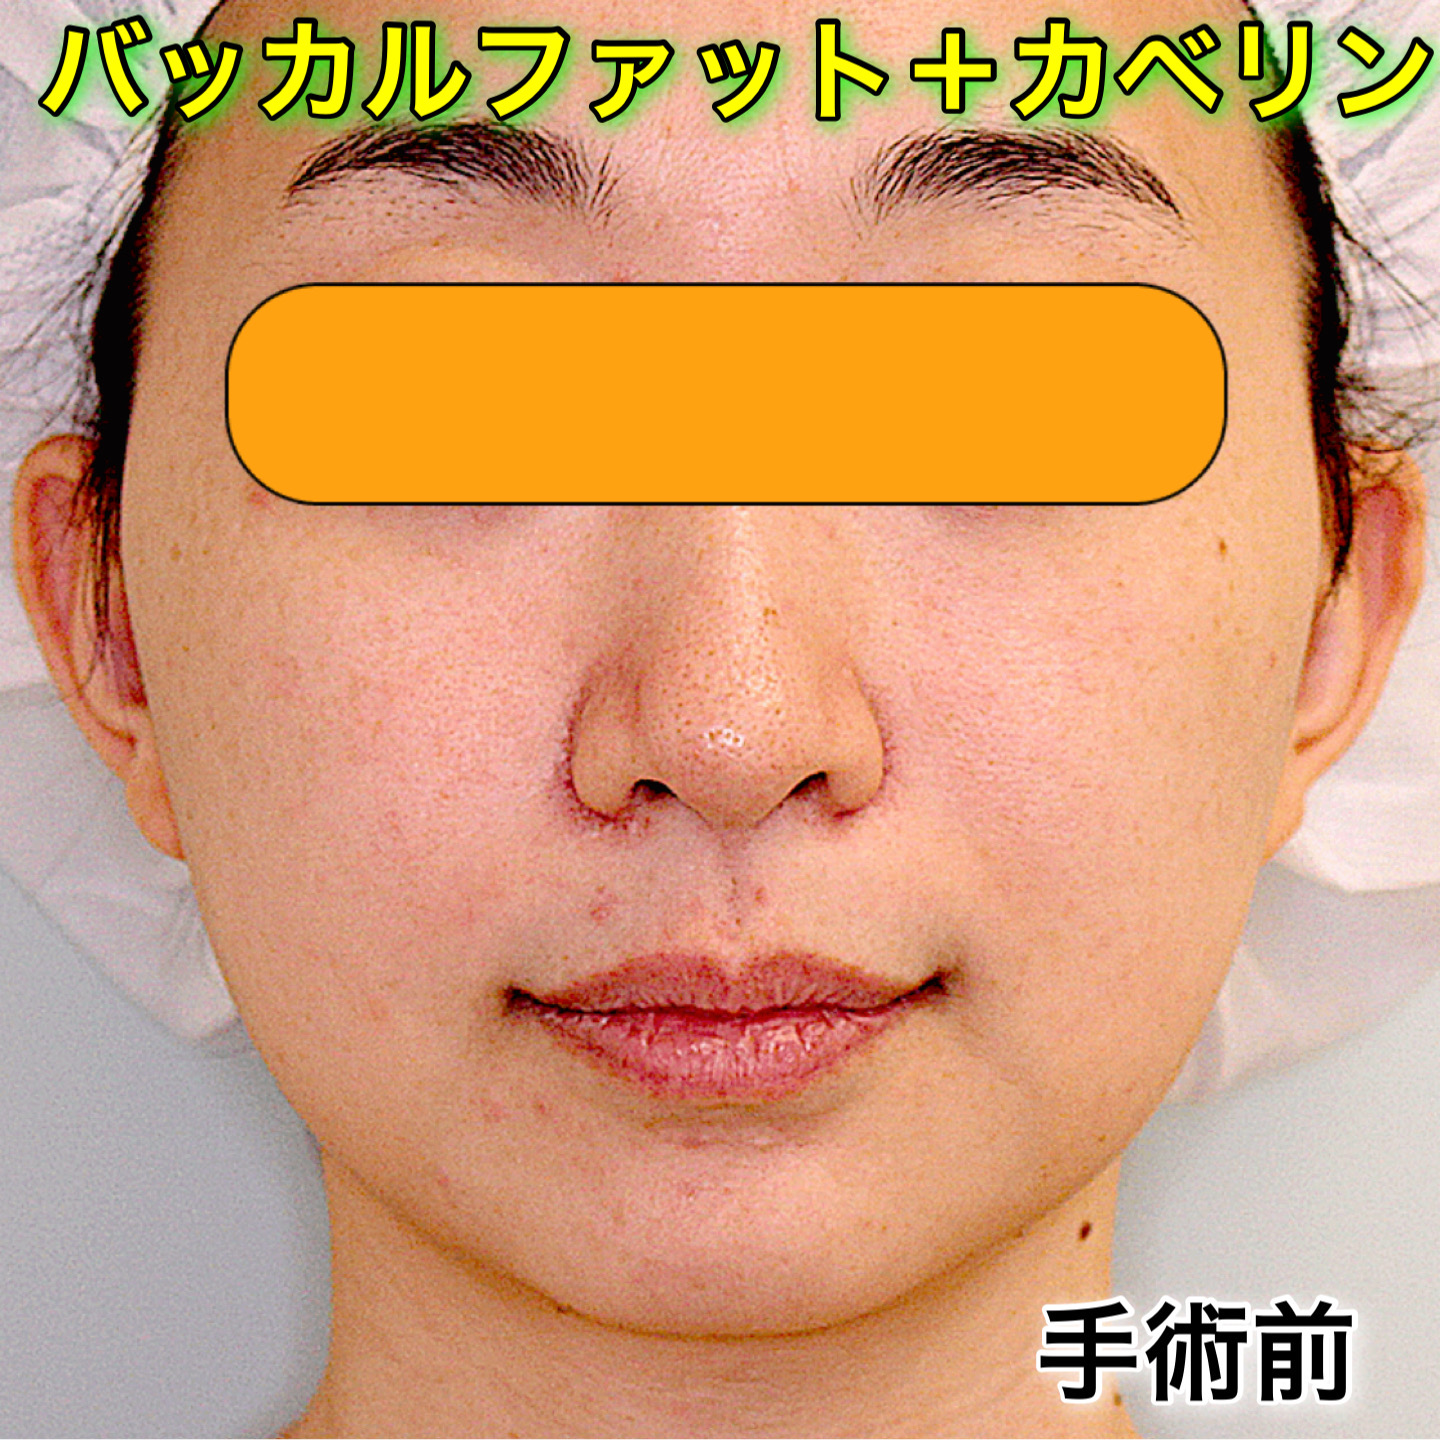 症例写真 バッカルファット除去 カベリン注射 小顔整形 輪郭整形専門の美容外科 銀座フェイスクリニック